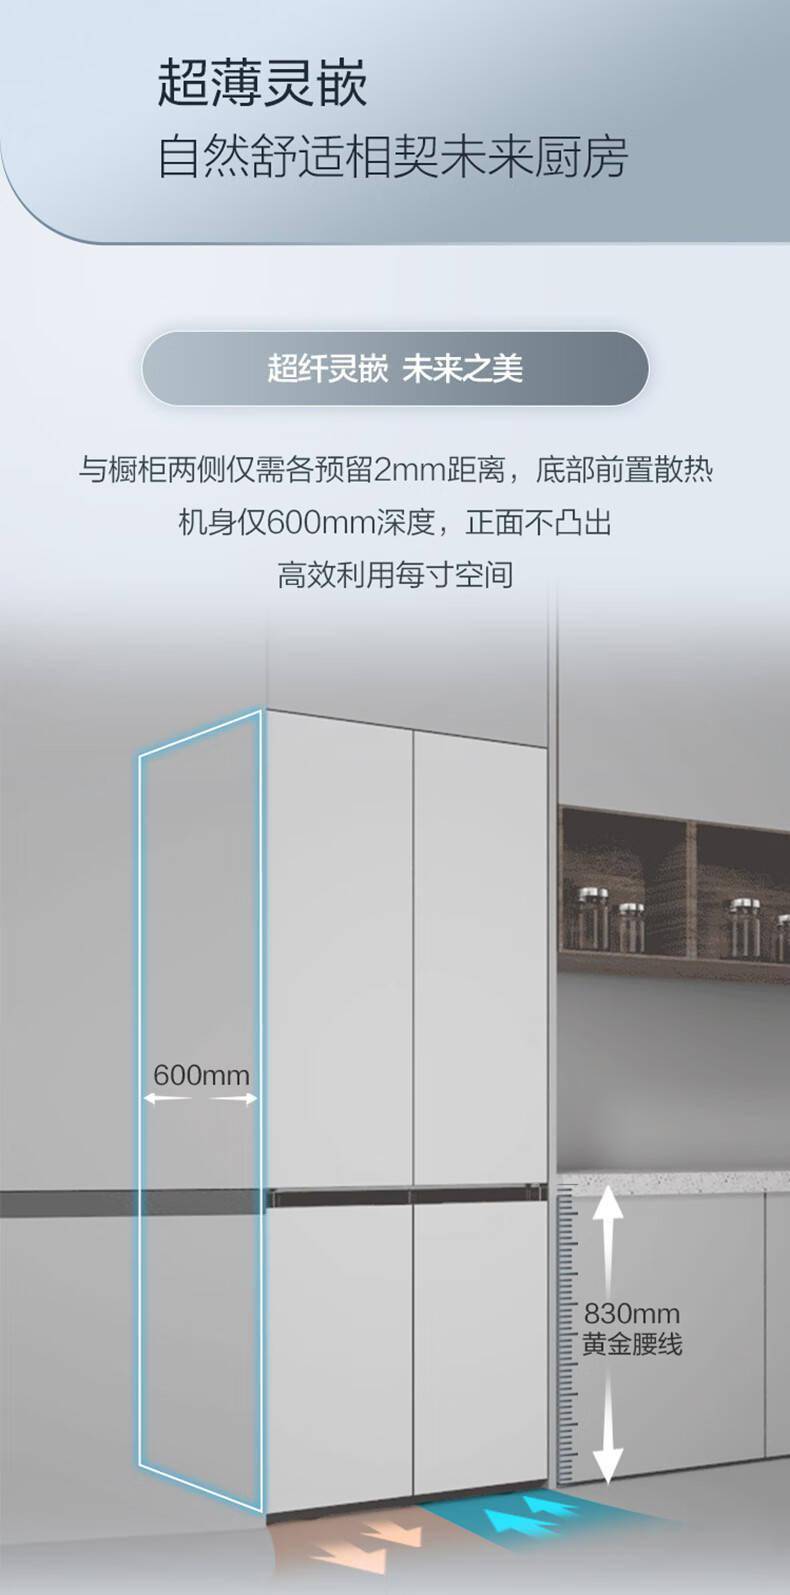 三星推出 501L 嵌入式十字四开门冰箱： 600mm 超薄平嵌 图2